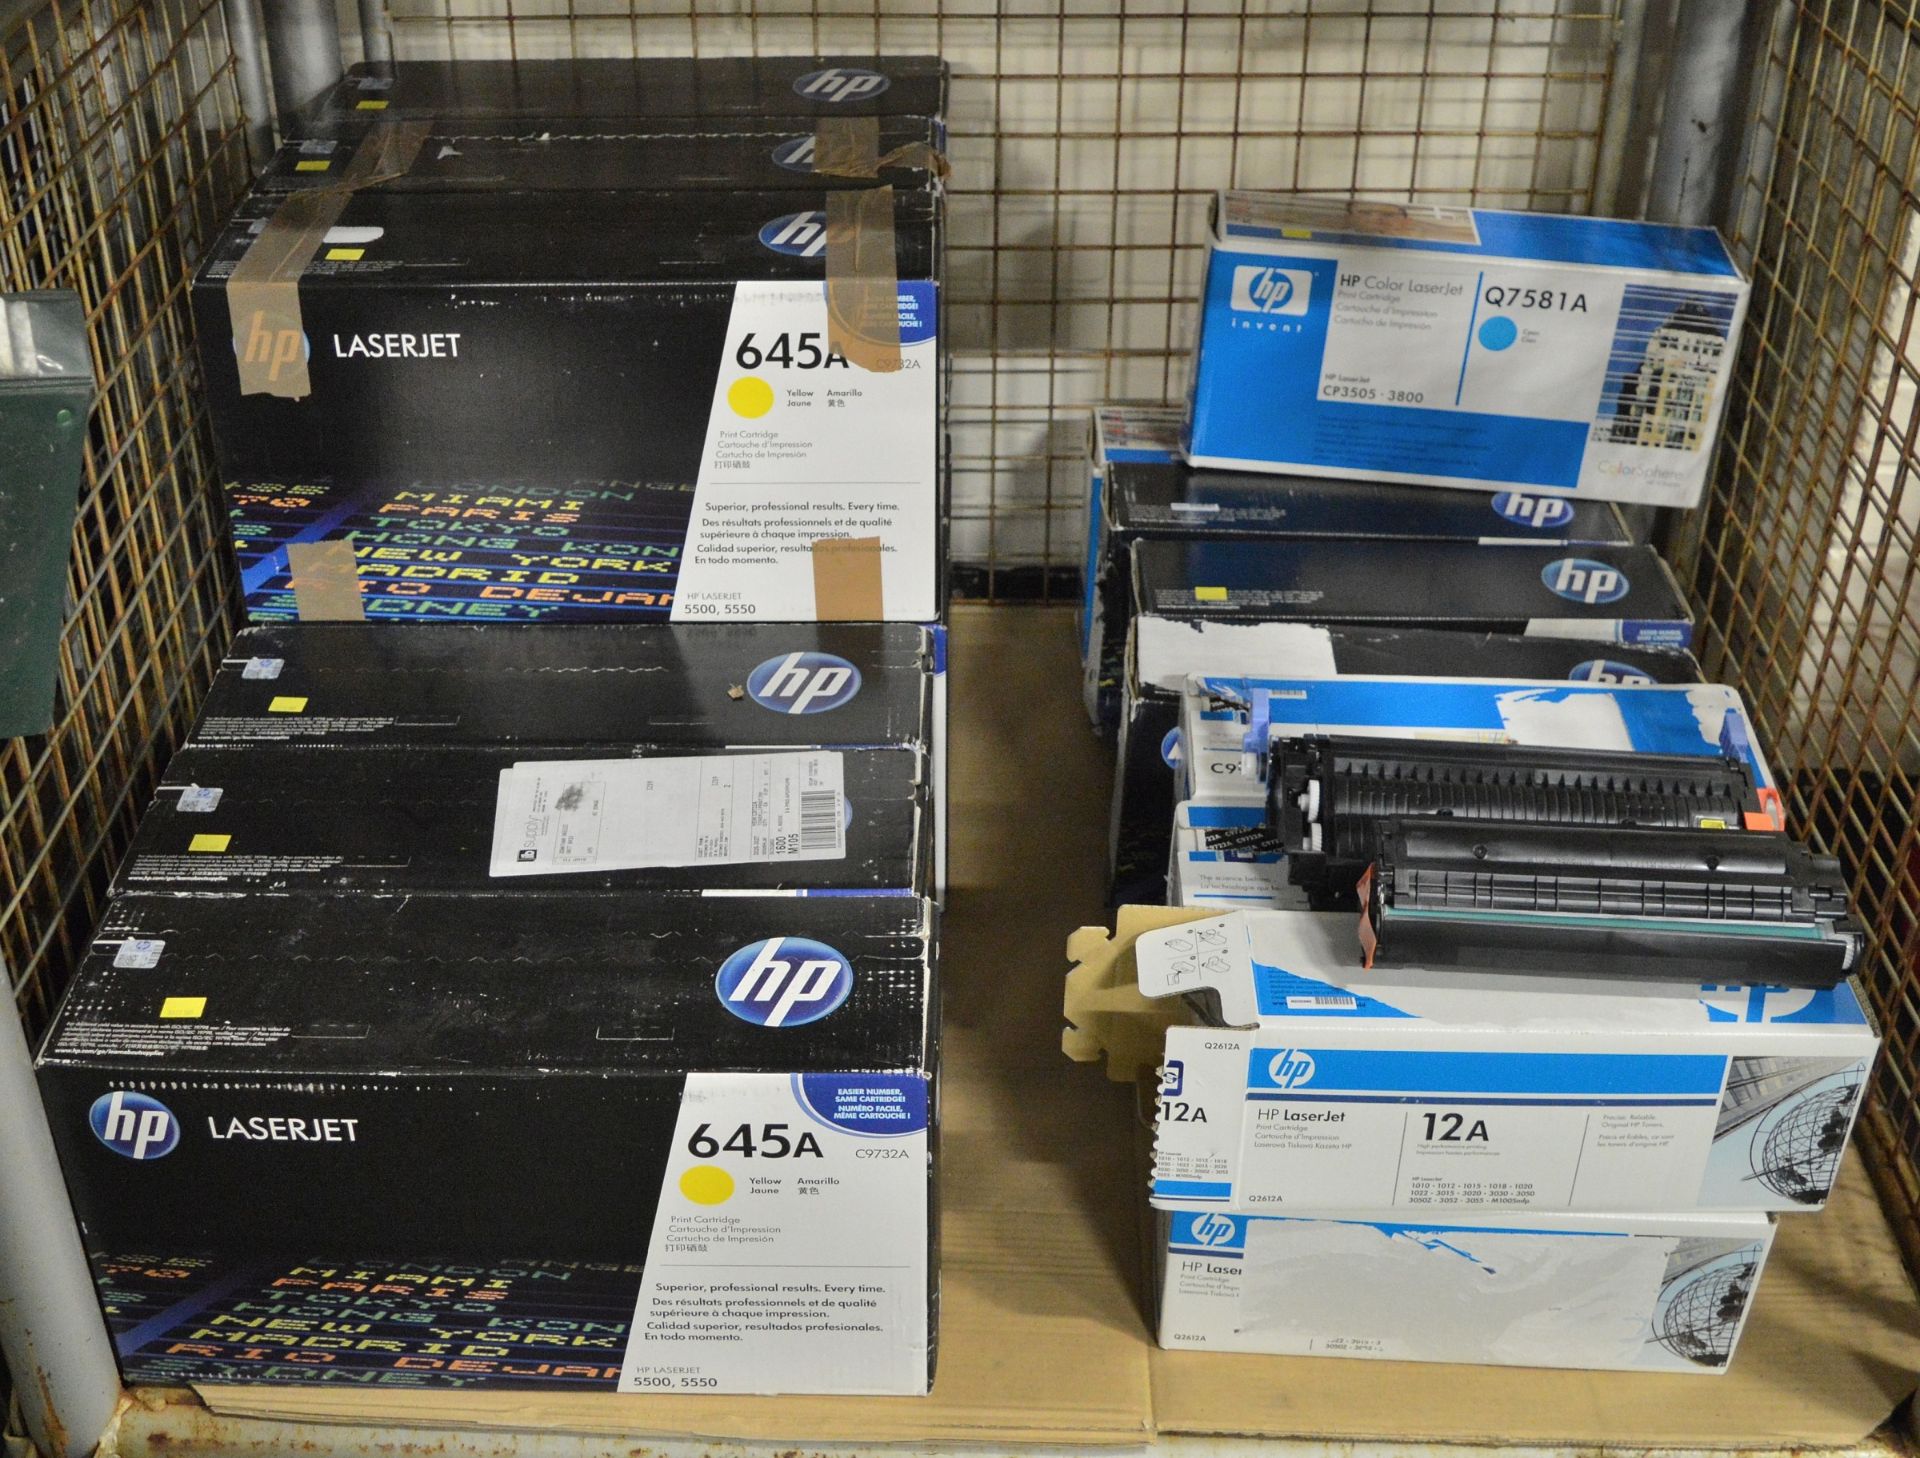 9x HP LaserJet 645A C9732A Yellow Print Cartridges, 4x HP LaserJet Q7581A Cyan Print Cartr